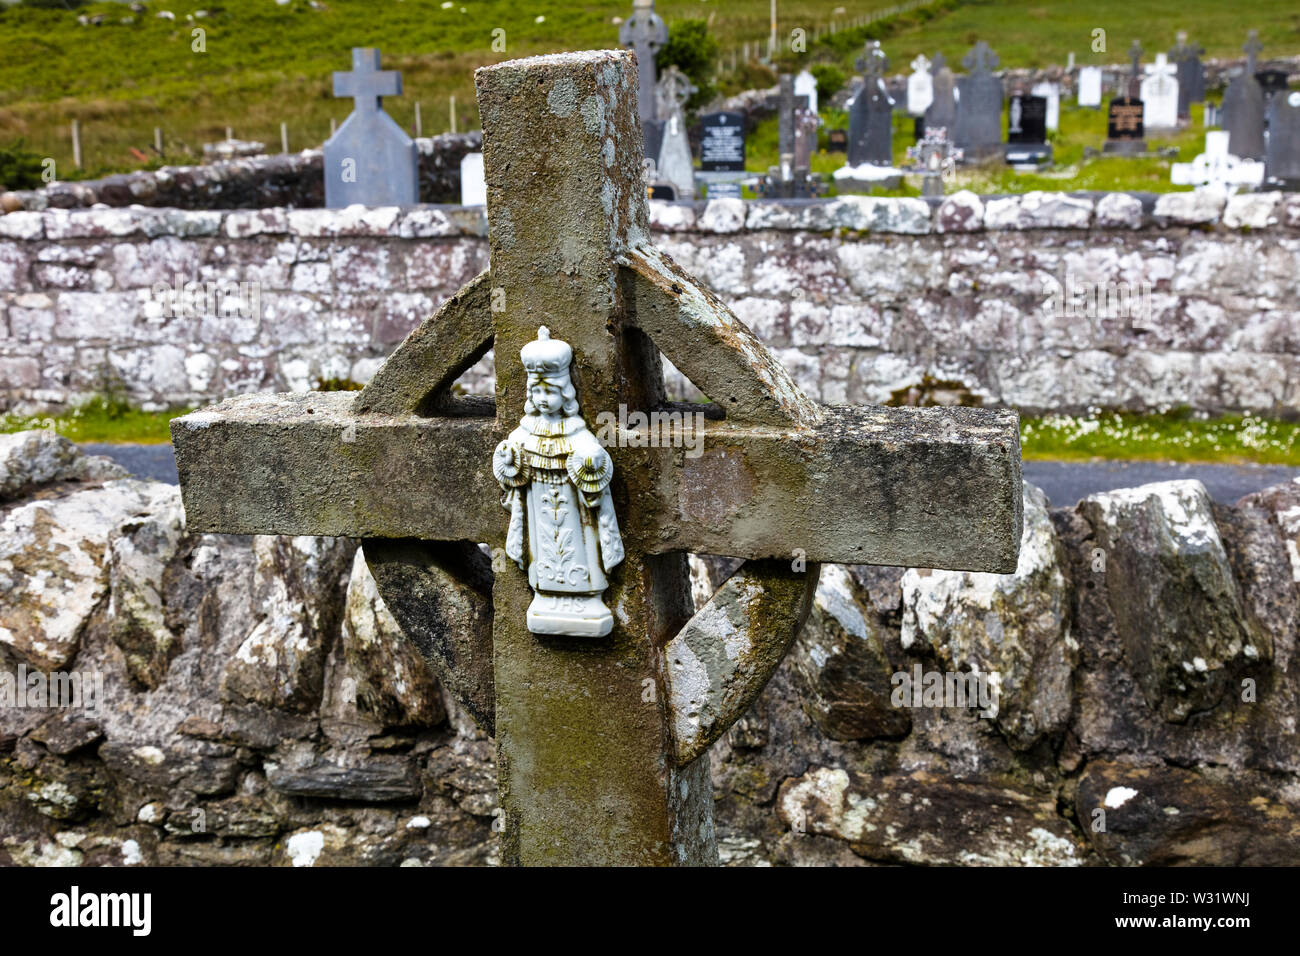 Kildownet Alten Friedhof auf dem wilden Atlantik Weise auf Achill Island im County Mayo Irland Stockfoto